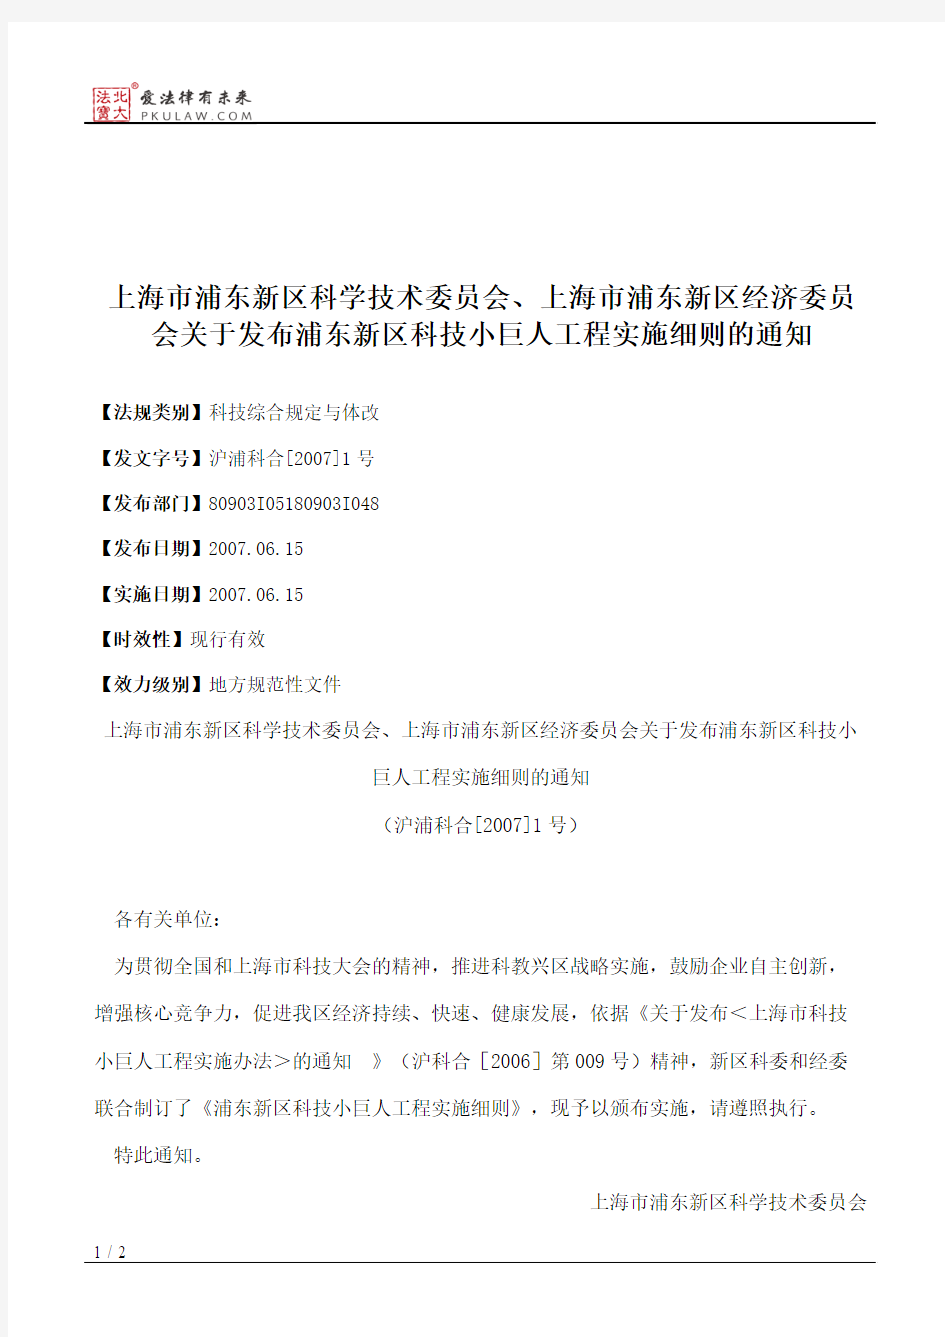 上海市浦东新区科学技术委员会、上海市浦东新区经济委员会关于发